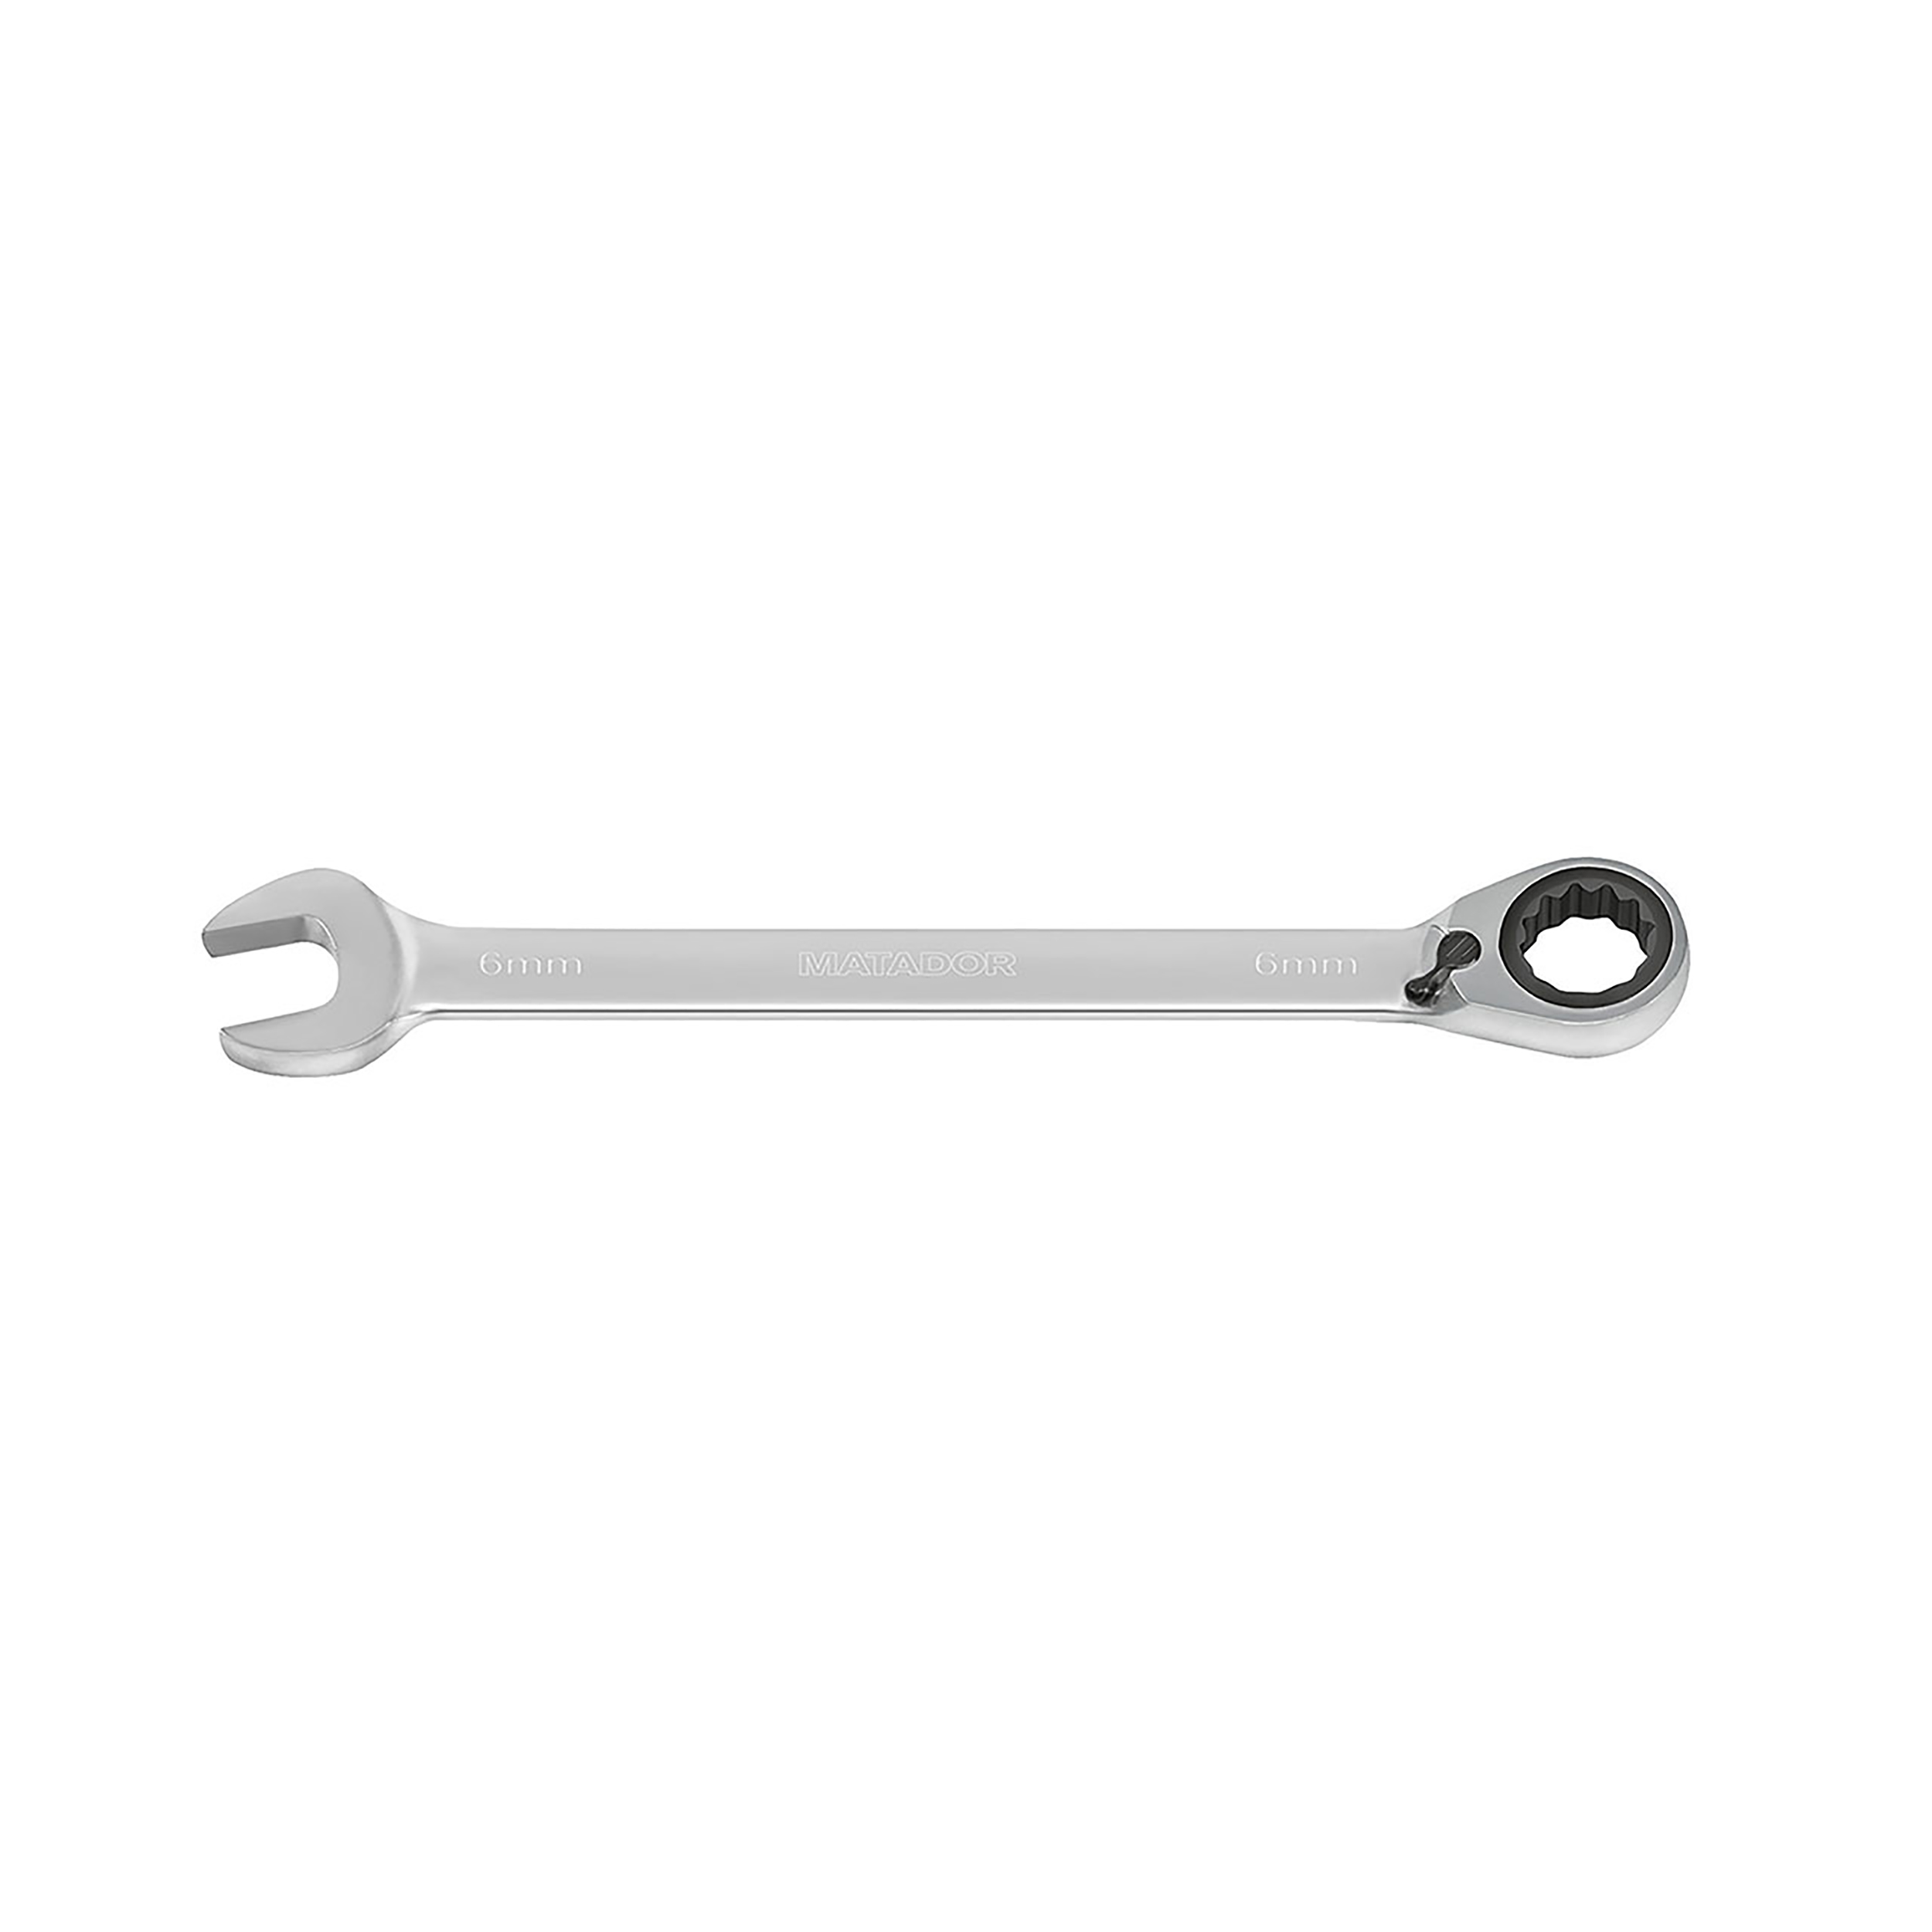 Knarren-Ringmaulschlüssel, m. Hebel, 16 mm, 296 Nm, MATADOR Art.-Code: 01890160